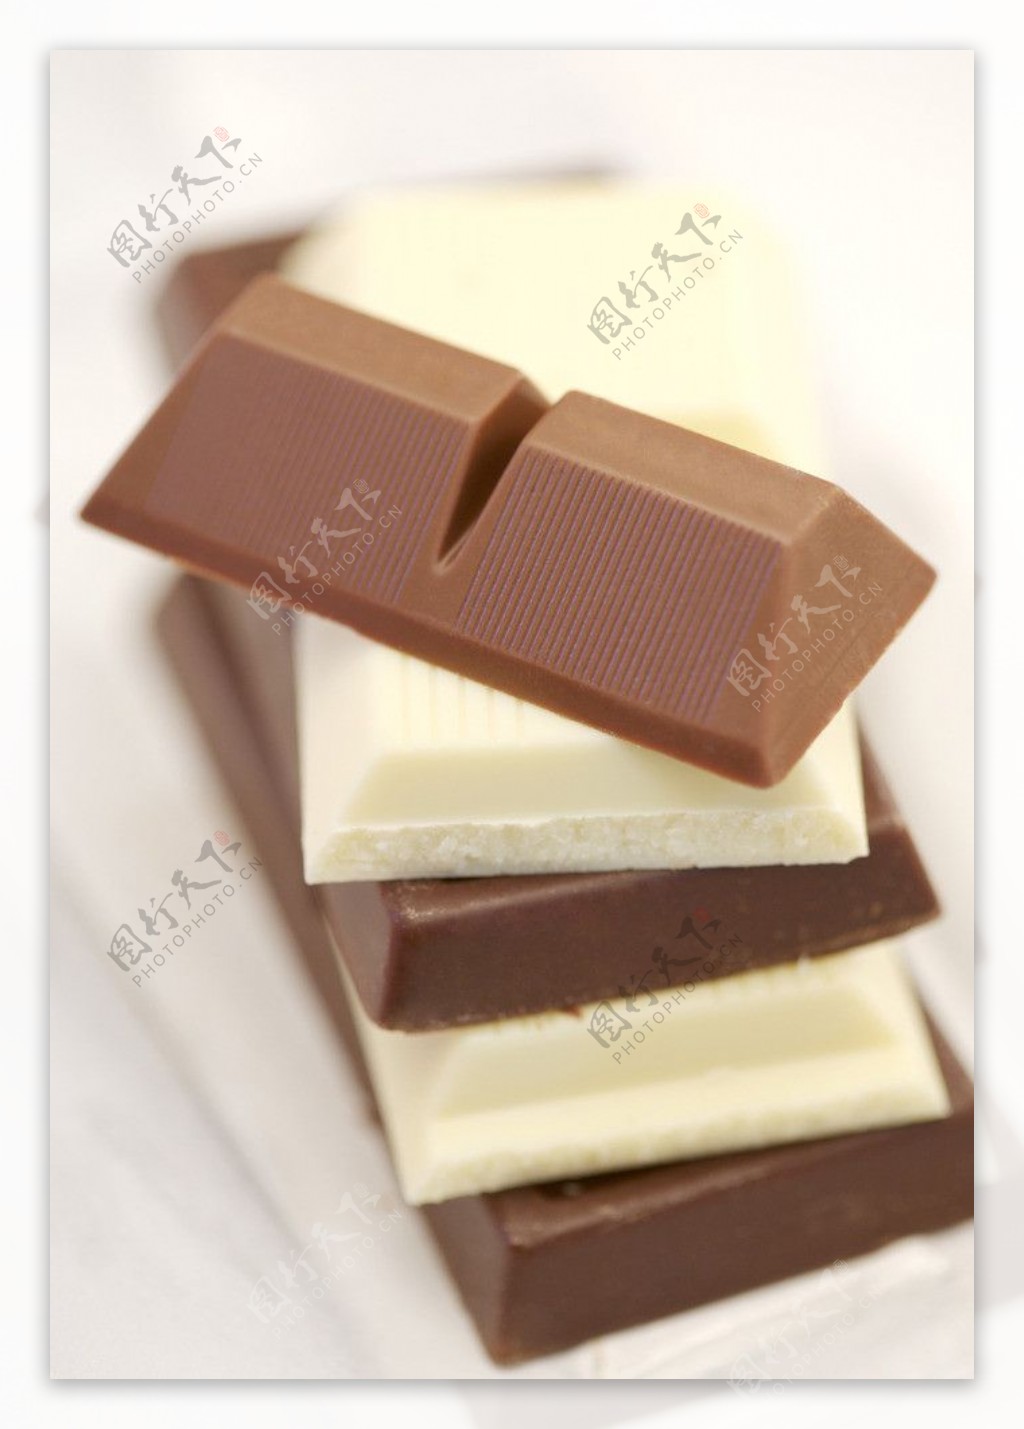 巧克力奶油巧克力图片